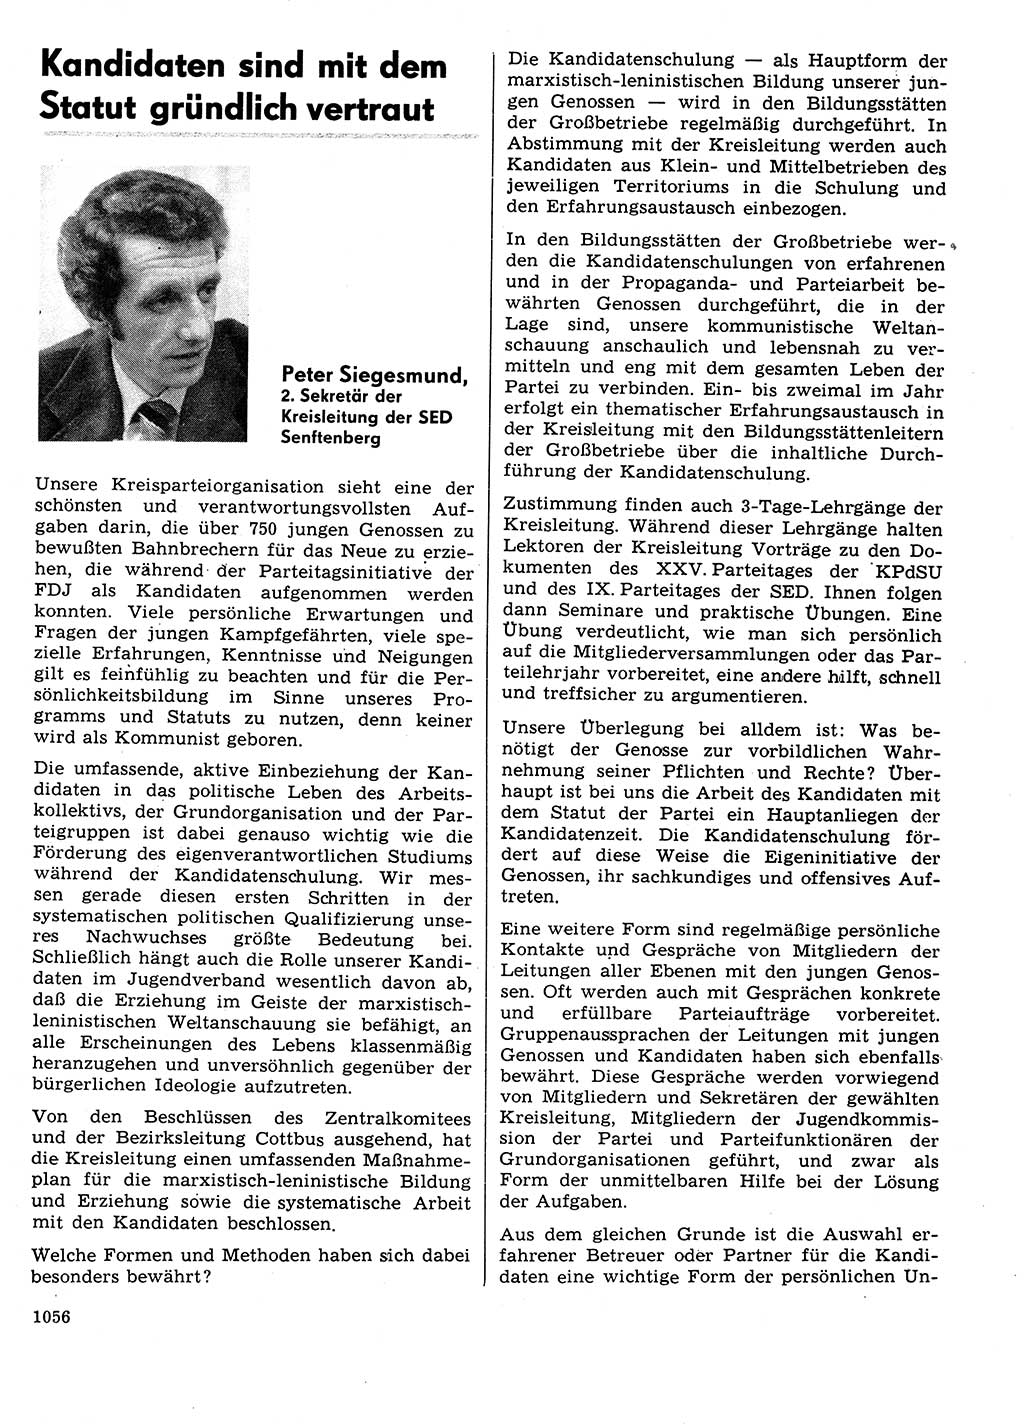 Neuer Weg (NW), Organ des Zentralkomitees (ZK) der SED (Sozialistische Einheitspartei Deutschlands) für Fragen des Parteilebens, 31. Jahrgang [Deutsche Demokratische Republik (DDR)] 1976, Seite 1056 (NW ZK SED DDR 1976, S. 1056)